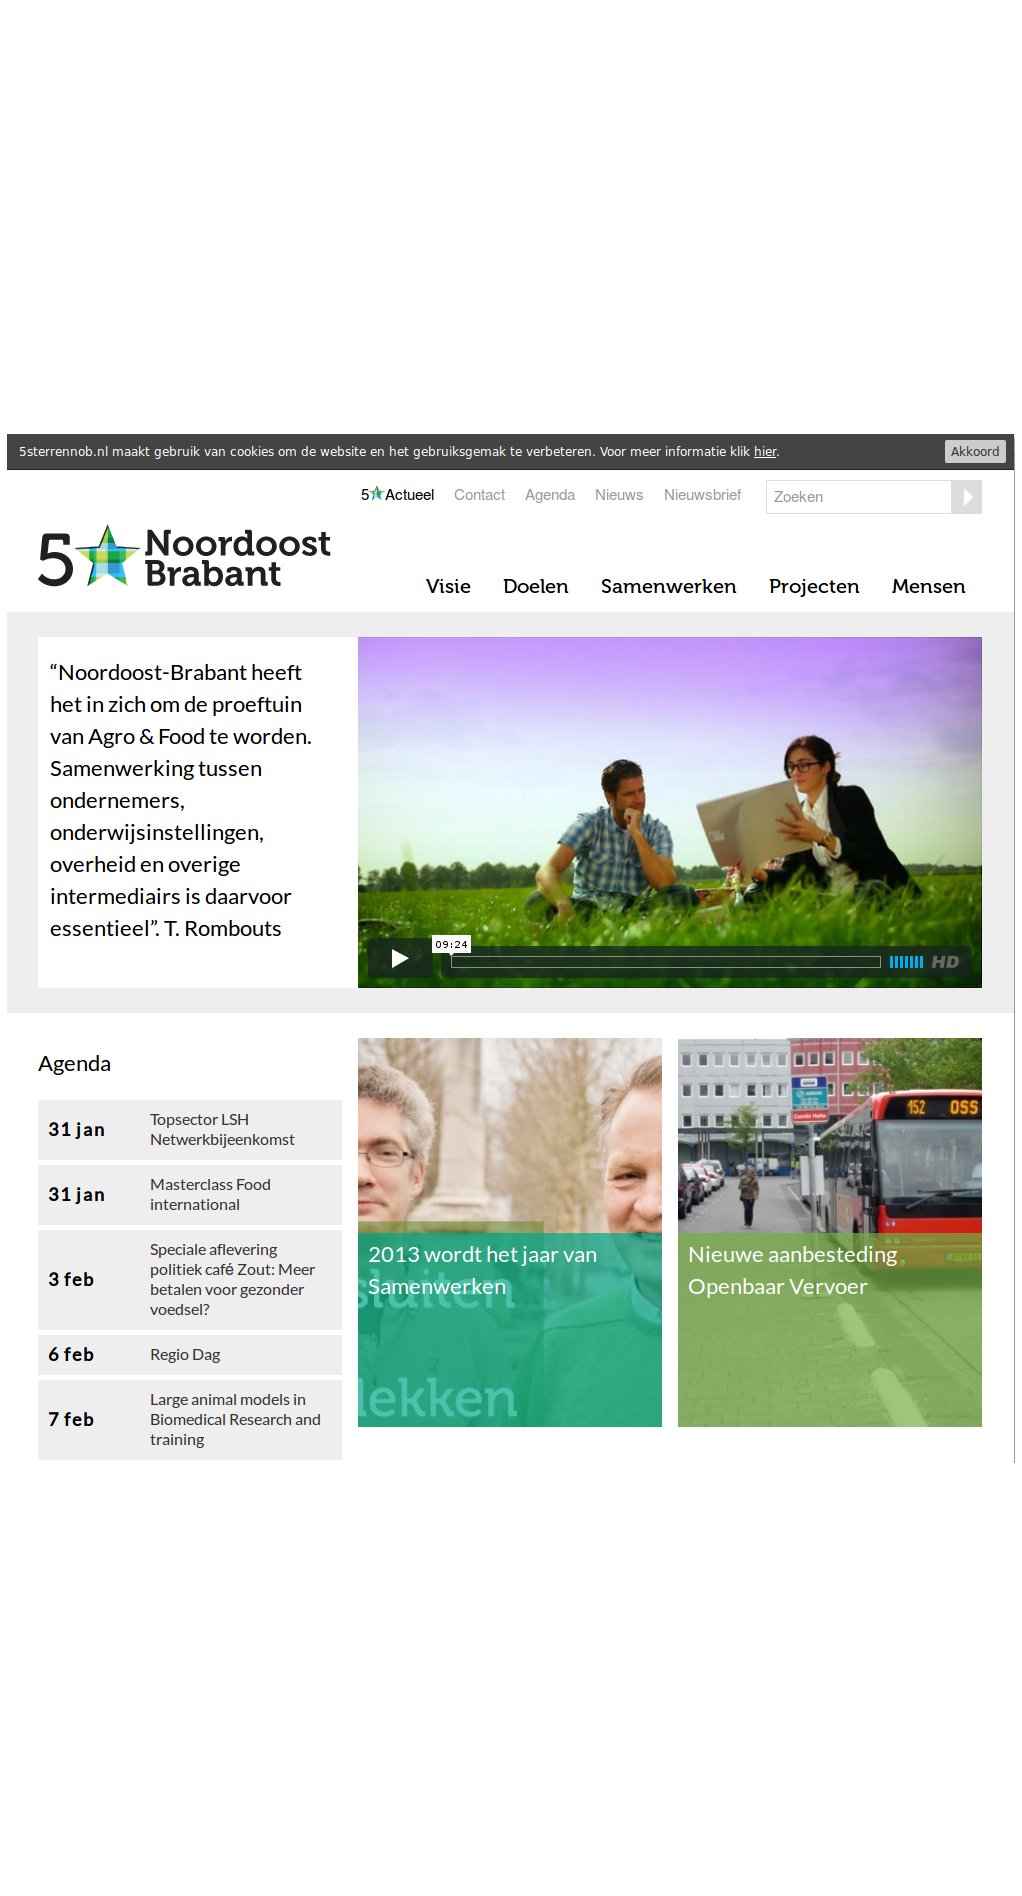 5 * Noordoost Brabant (bartvanirsel)